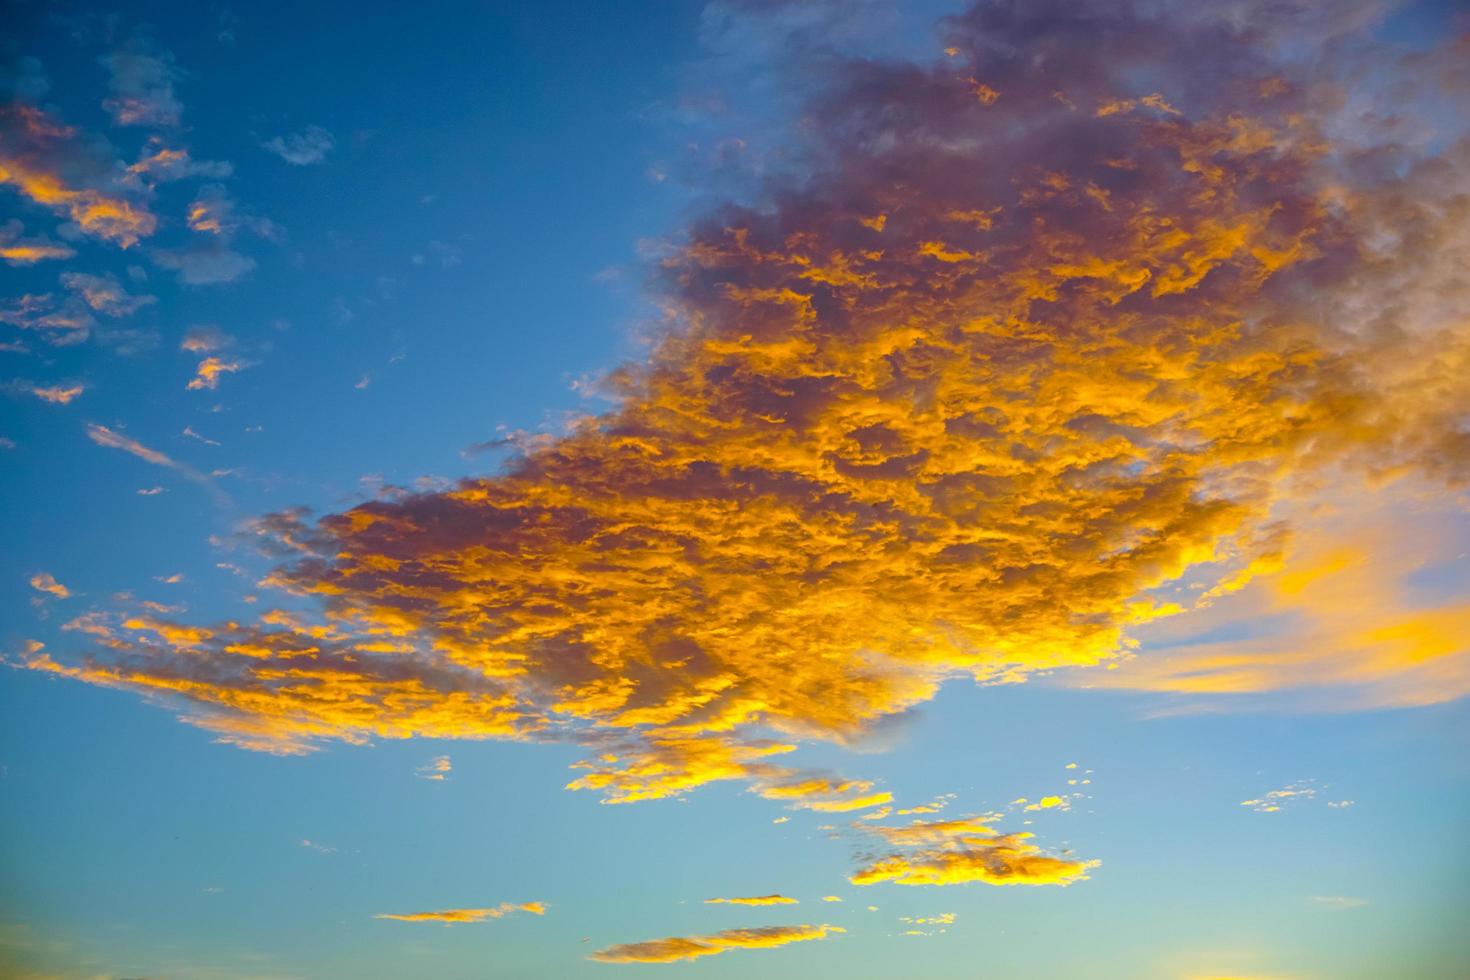 dramatische rode en oranje lucht en wolken abstracte achtergrond. rood-oranje wolken op avondrood. warm weer achtergrond. kunst foto van de hemel. zonsondergang abstracte achtergrond. schemering en dageraad concept gratis foto